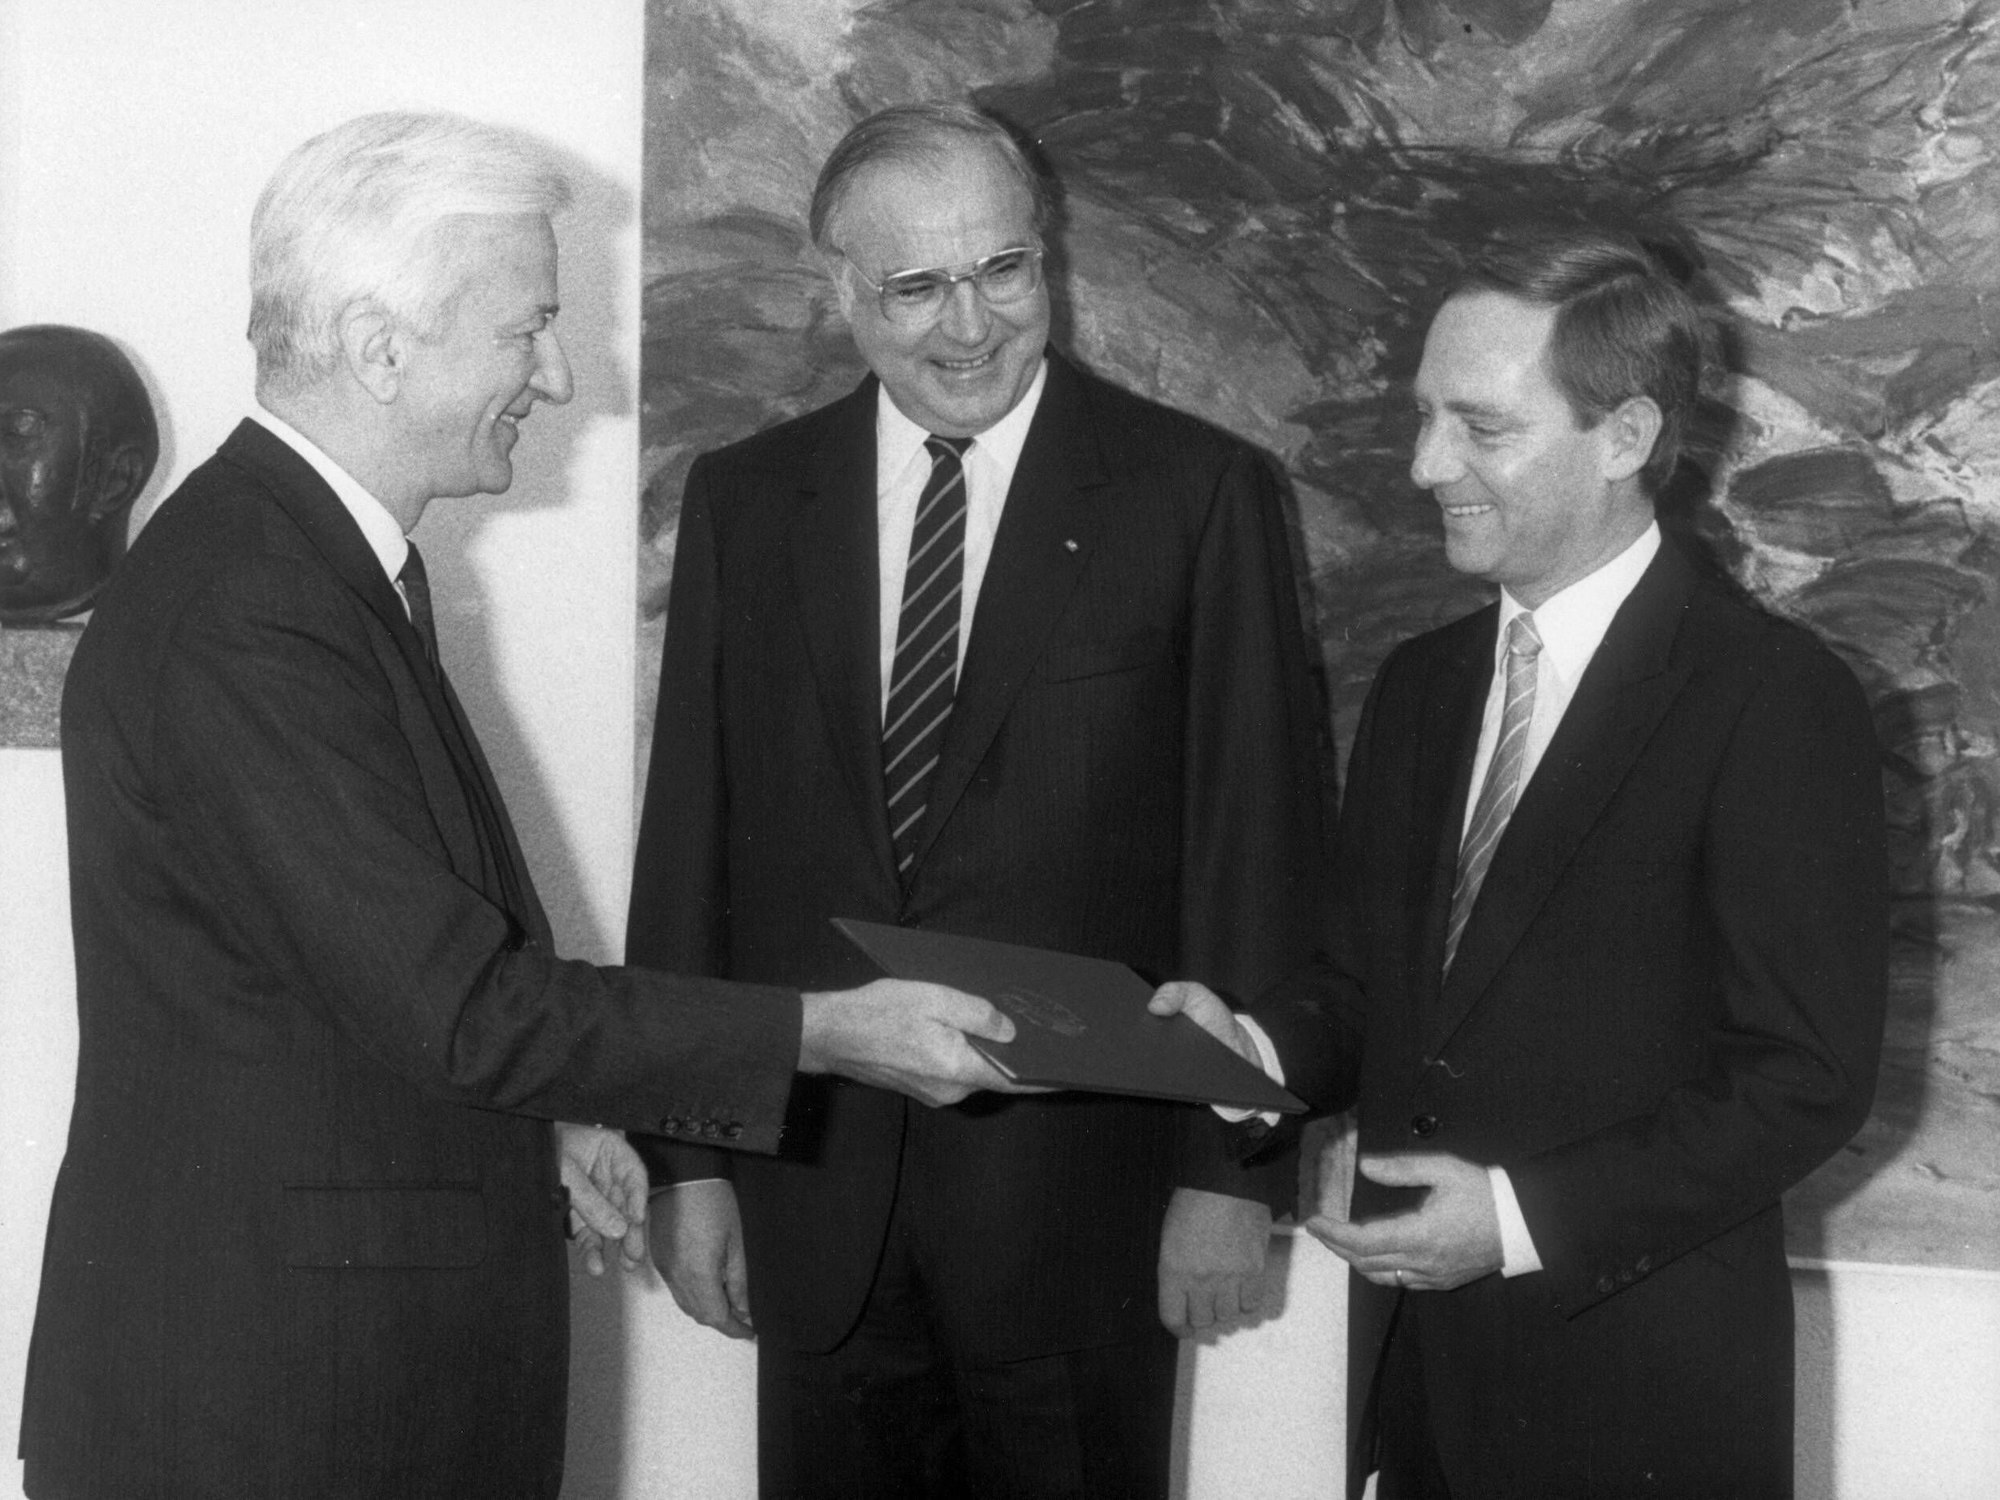 Bundespräsident Richard von Weizsäcker (CDU) überreicht Wolfgang Schäuble (CDU) seine Ernennungsurkunde als Bundesminister für besondere Aufgaben. In der Mitte Bundeskanzler Helmut Kohl (CDU) hier im November 1984 in Bonn.